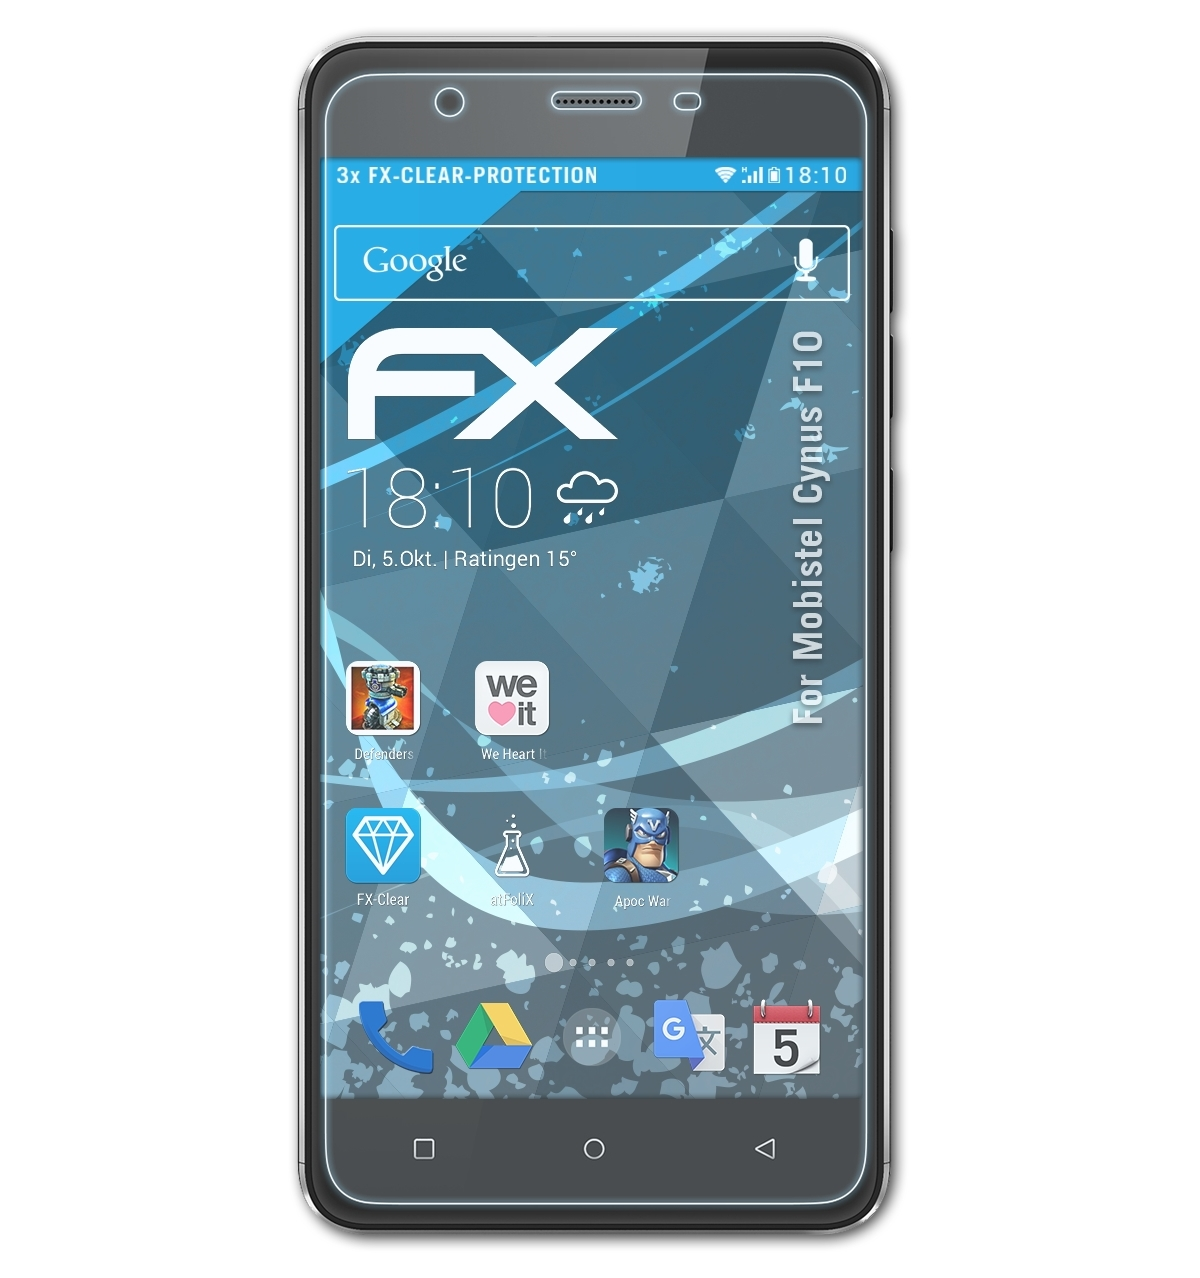 FX-Clear ATFOLIX 3x Mobistel Displayschutz(für Cynus F10)